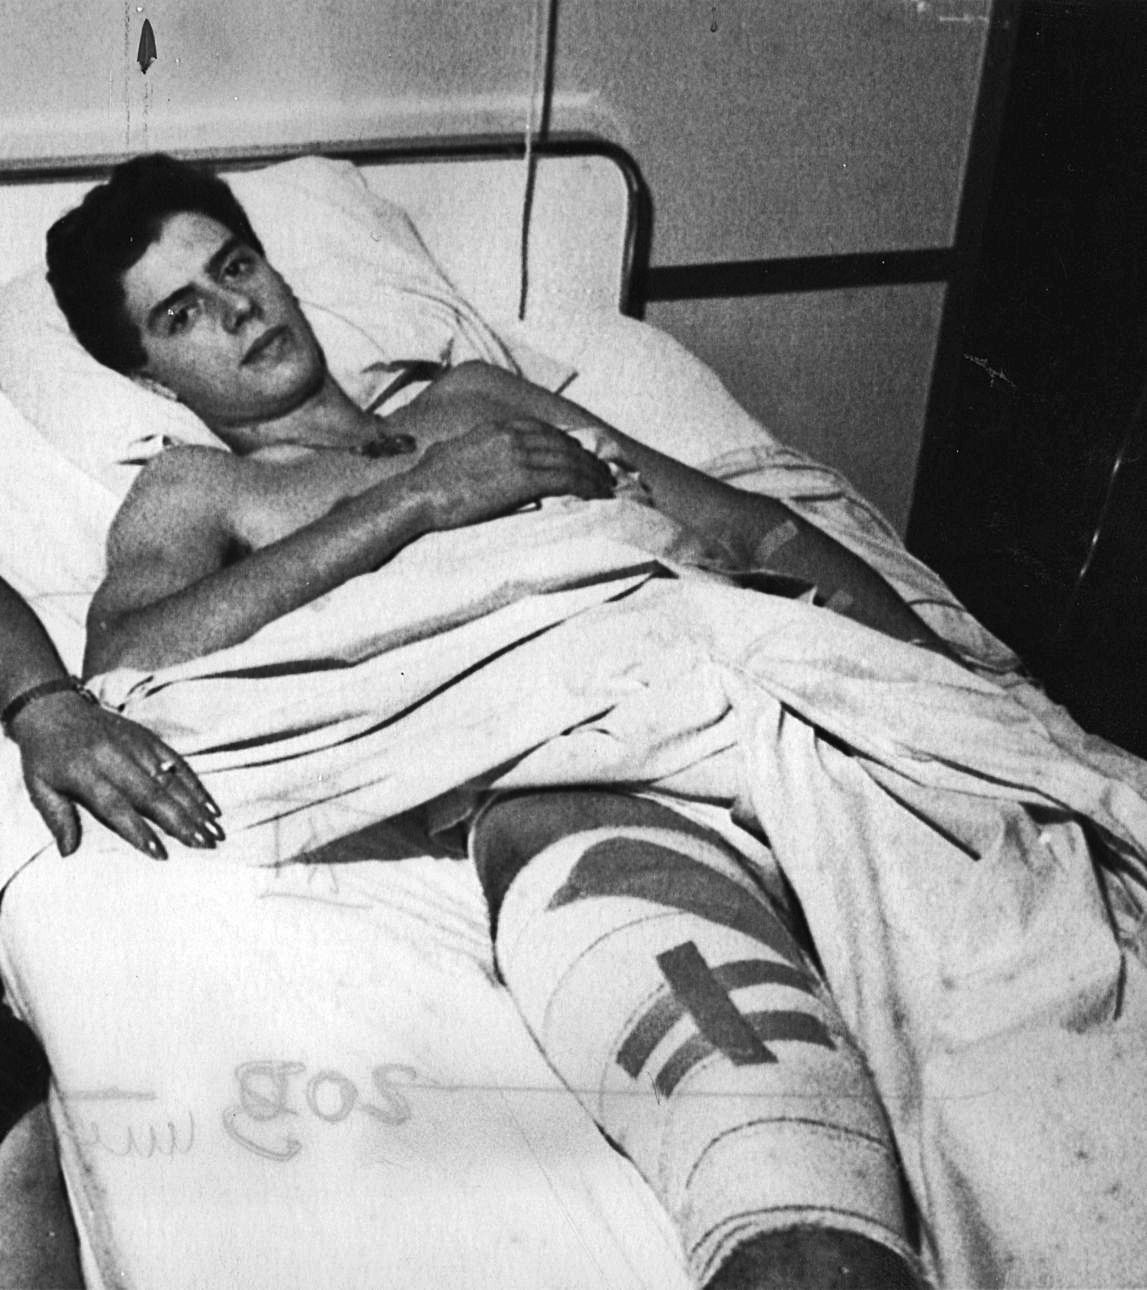 Finito convalece tras la cornada sufrida en Málaga en agosto de 1989. 